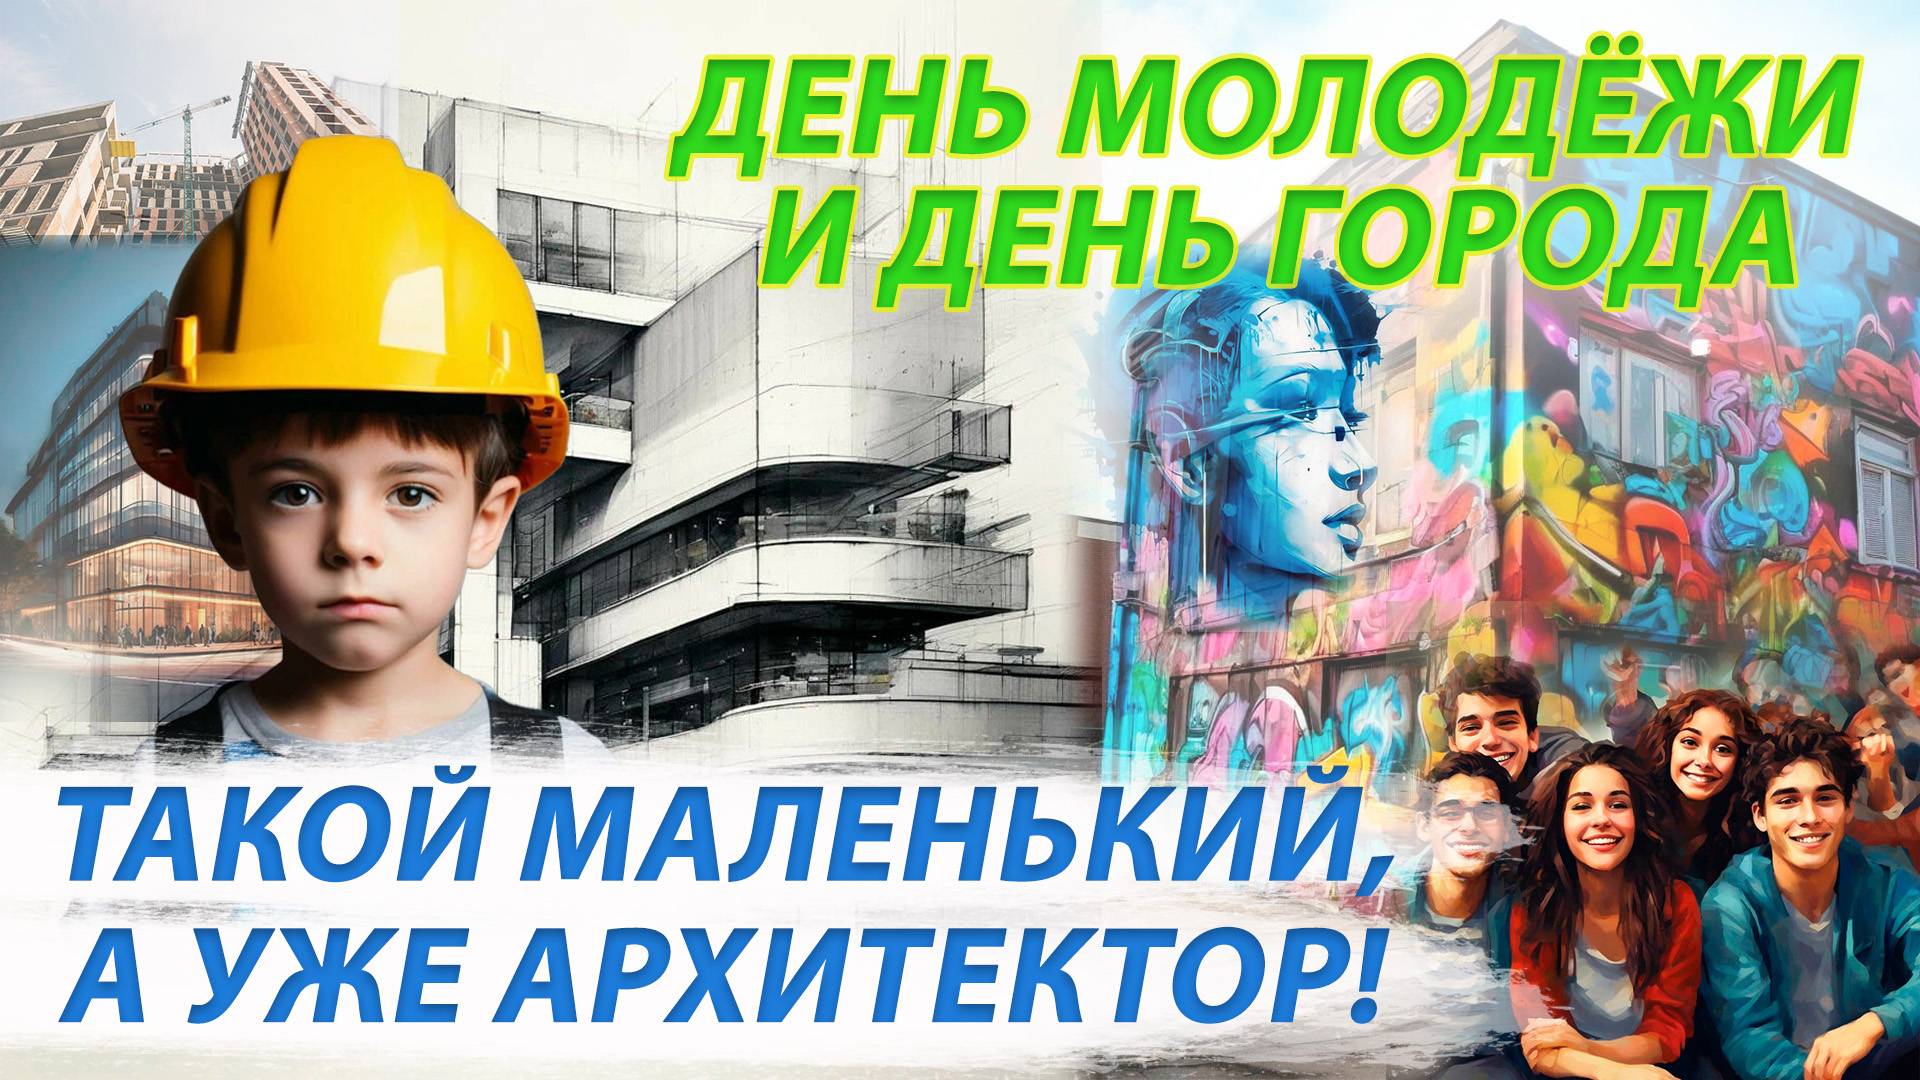 Архитекторы со школы / Выходные будут огненными! | Стрим ОТС LIVE — 27 июня